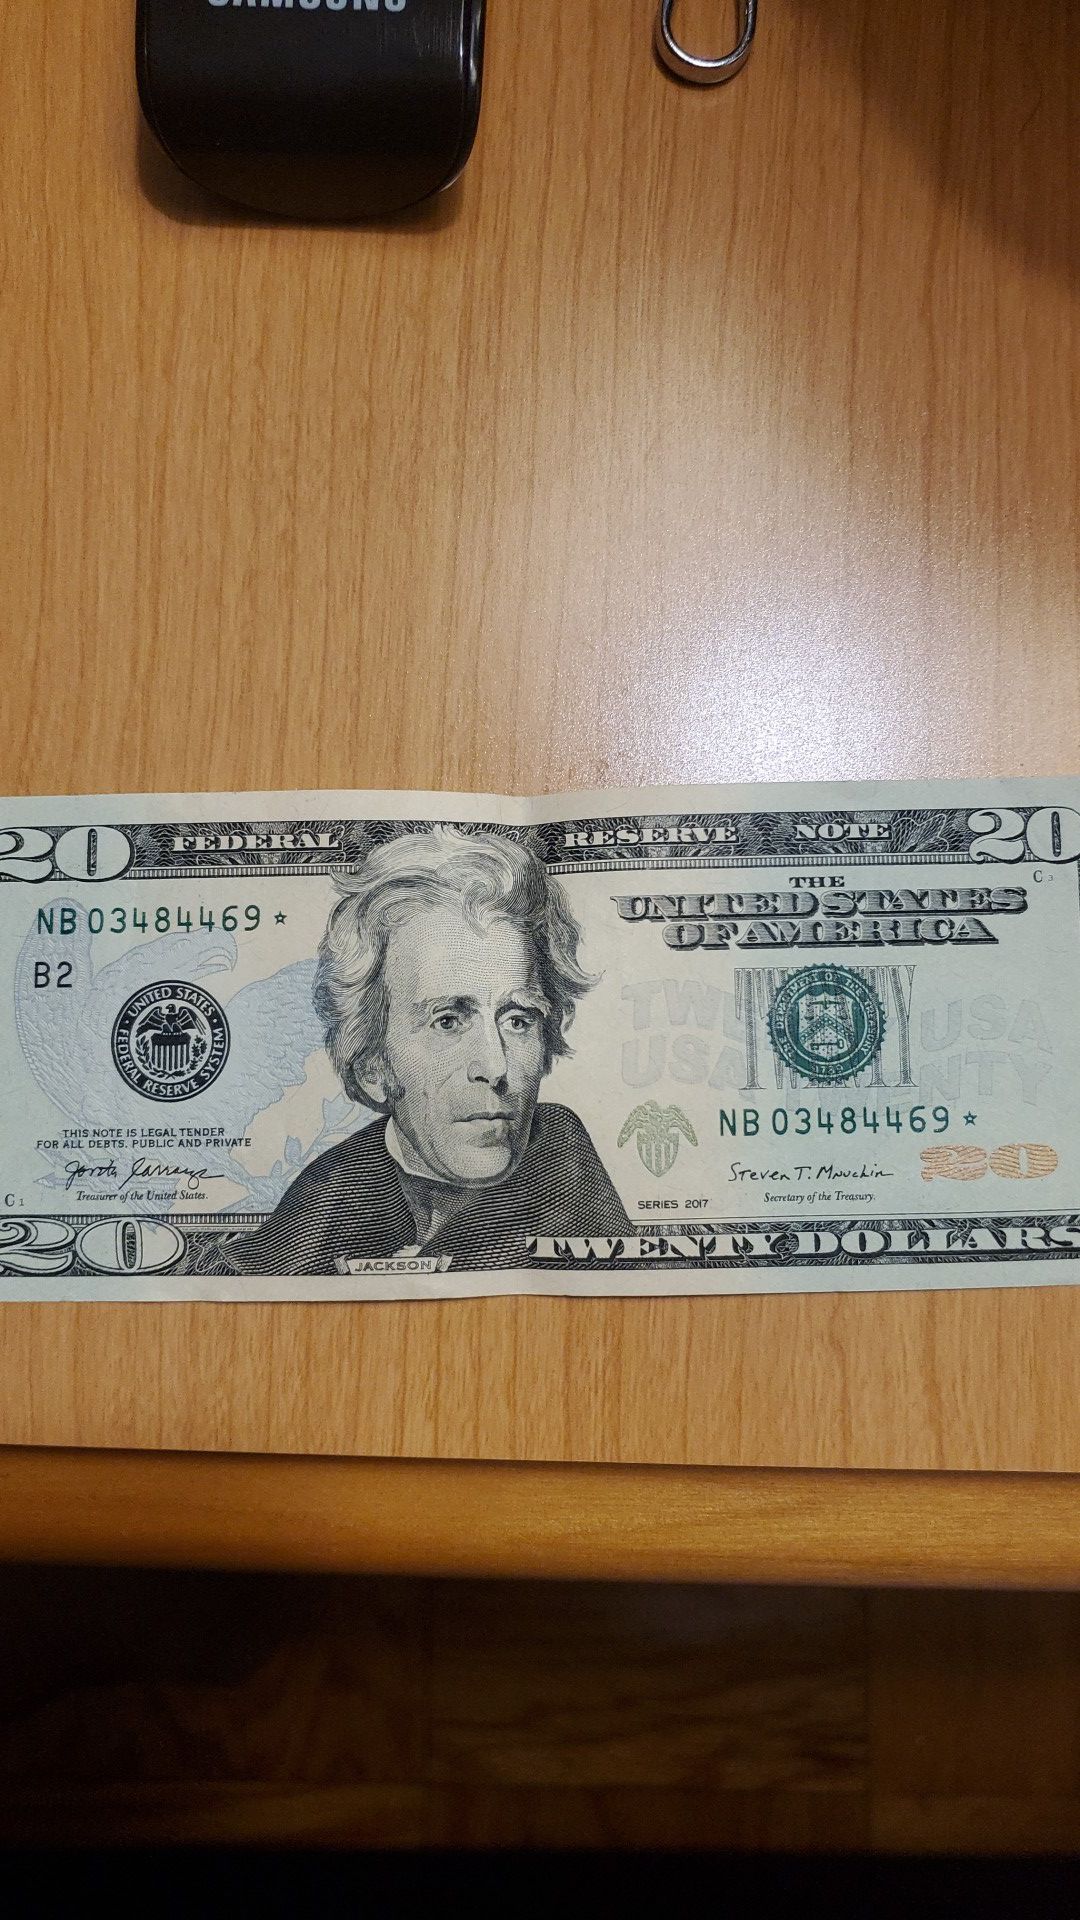 20 Dollars bill star note